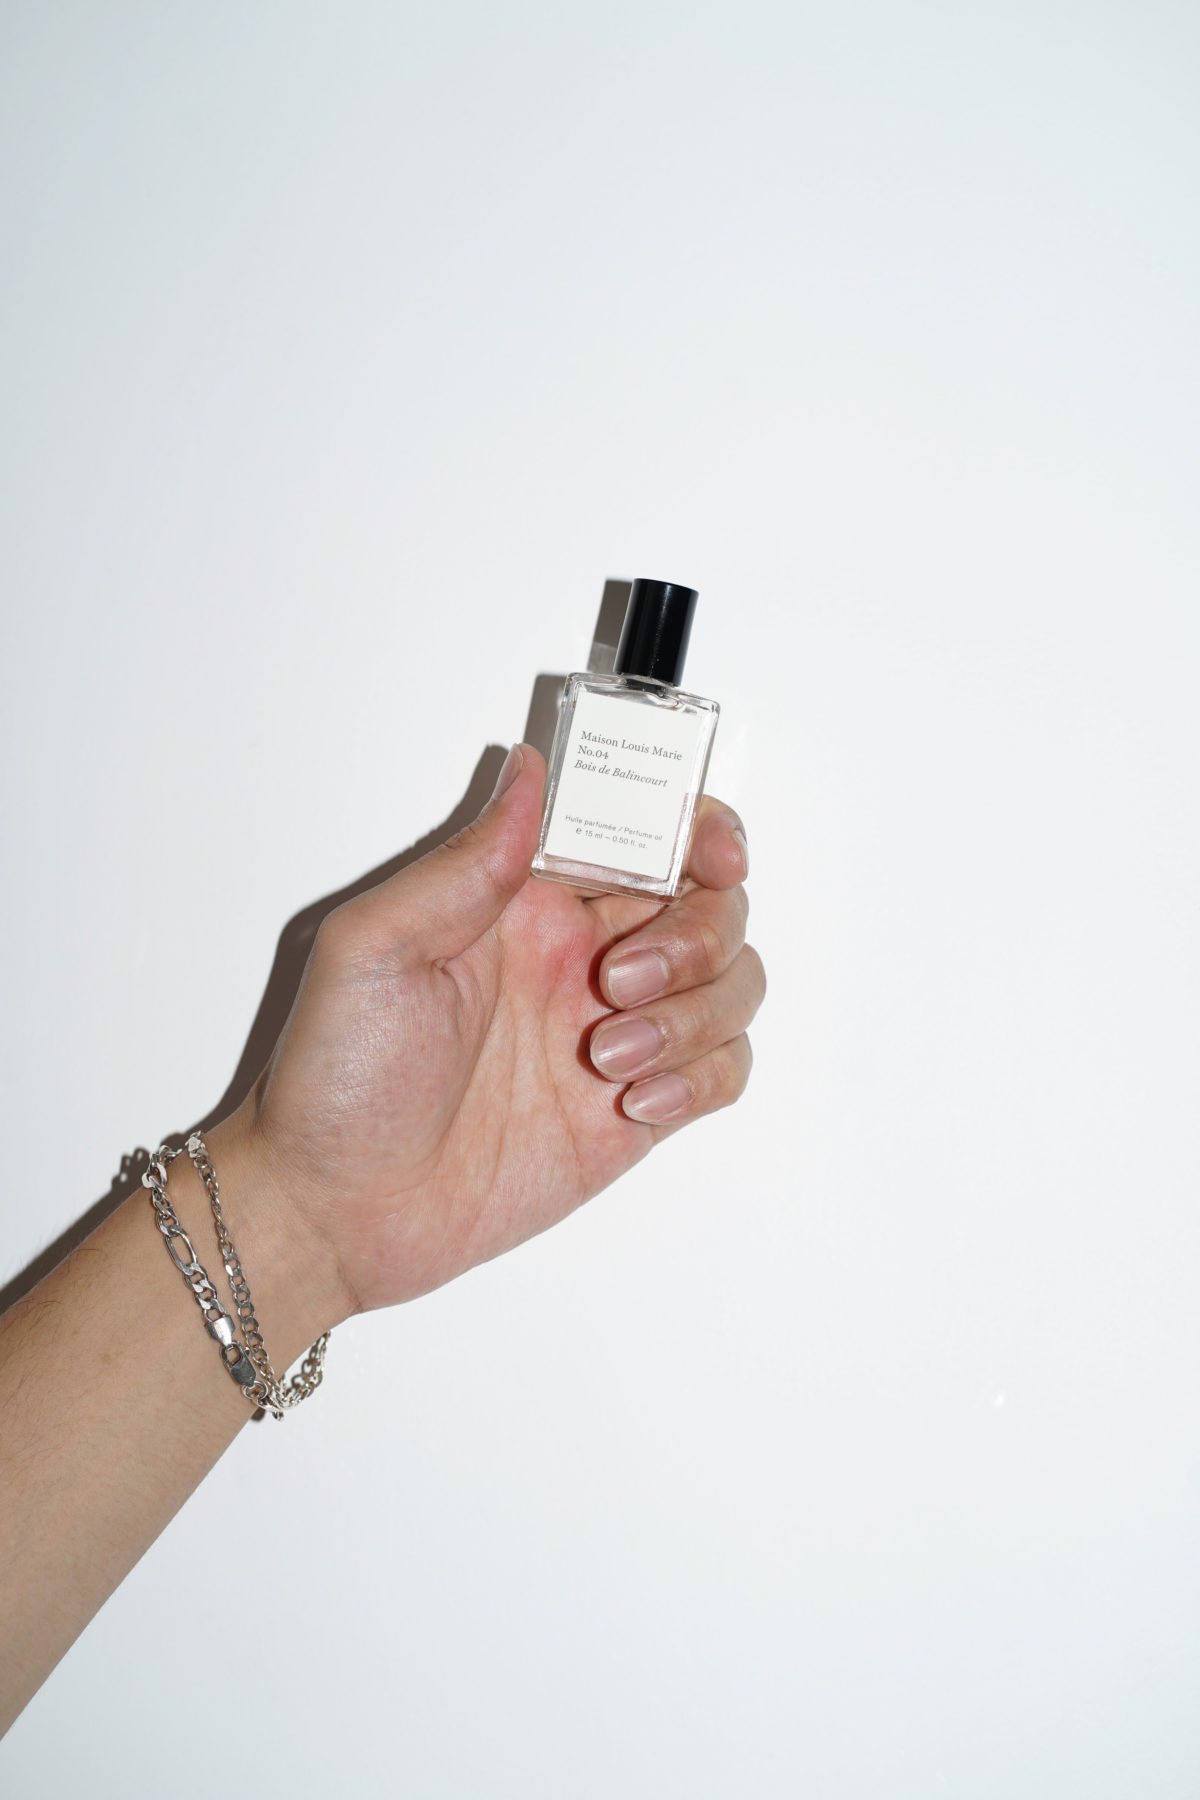 No.4 Bois de Balincourt Perfume oil | FUDGE UP NOTHING